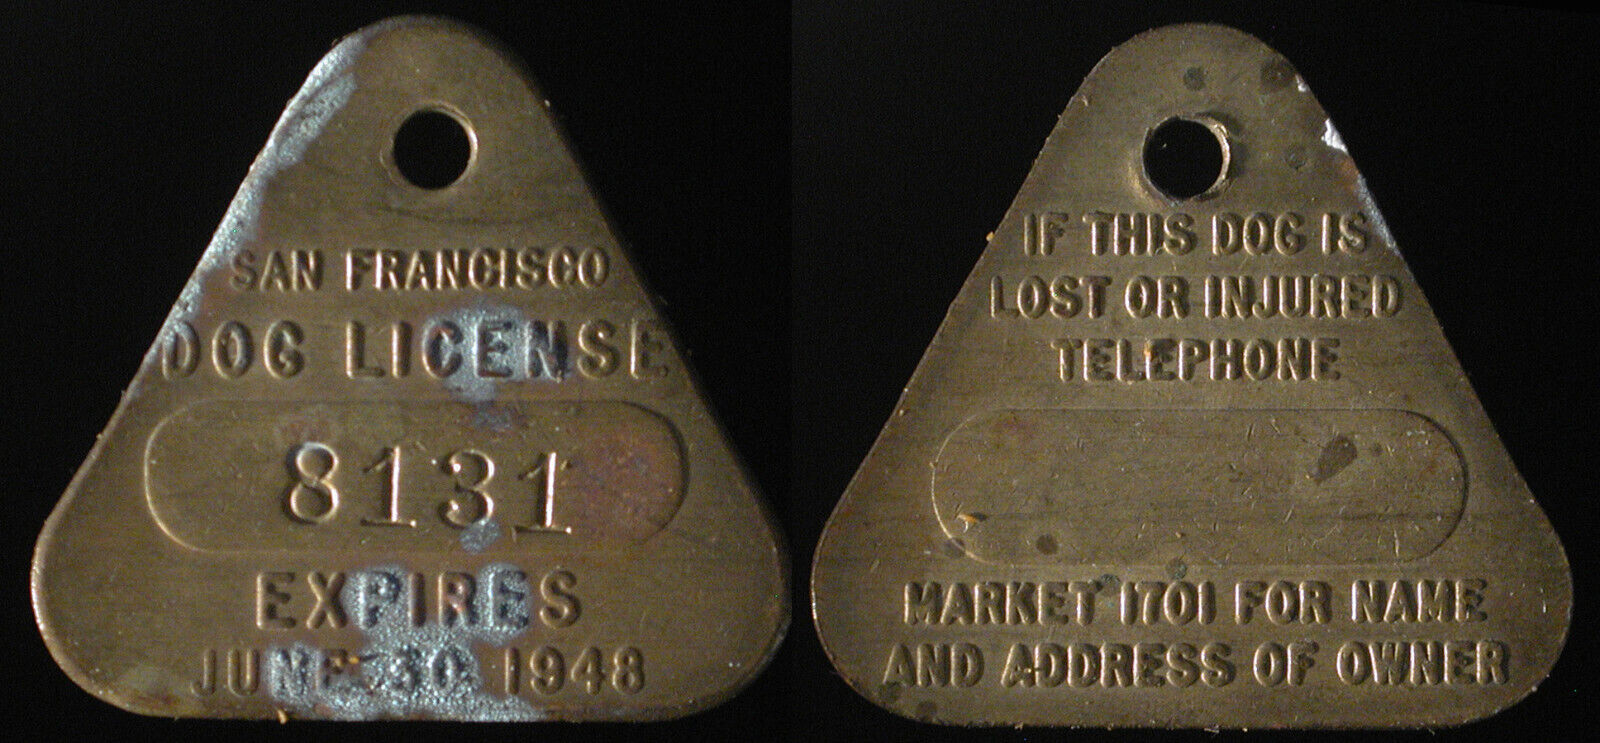 1948 San Francisco, California dog license tag